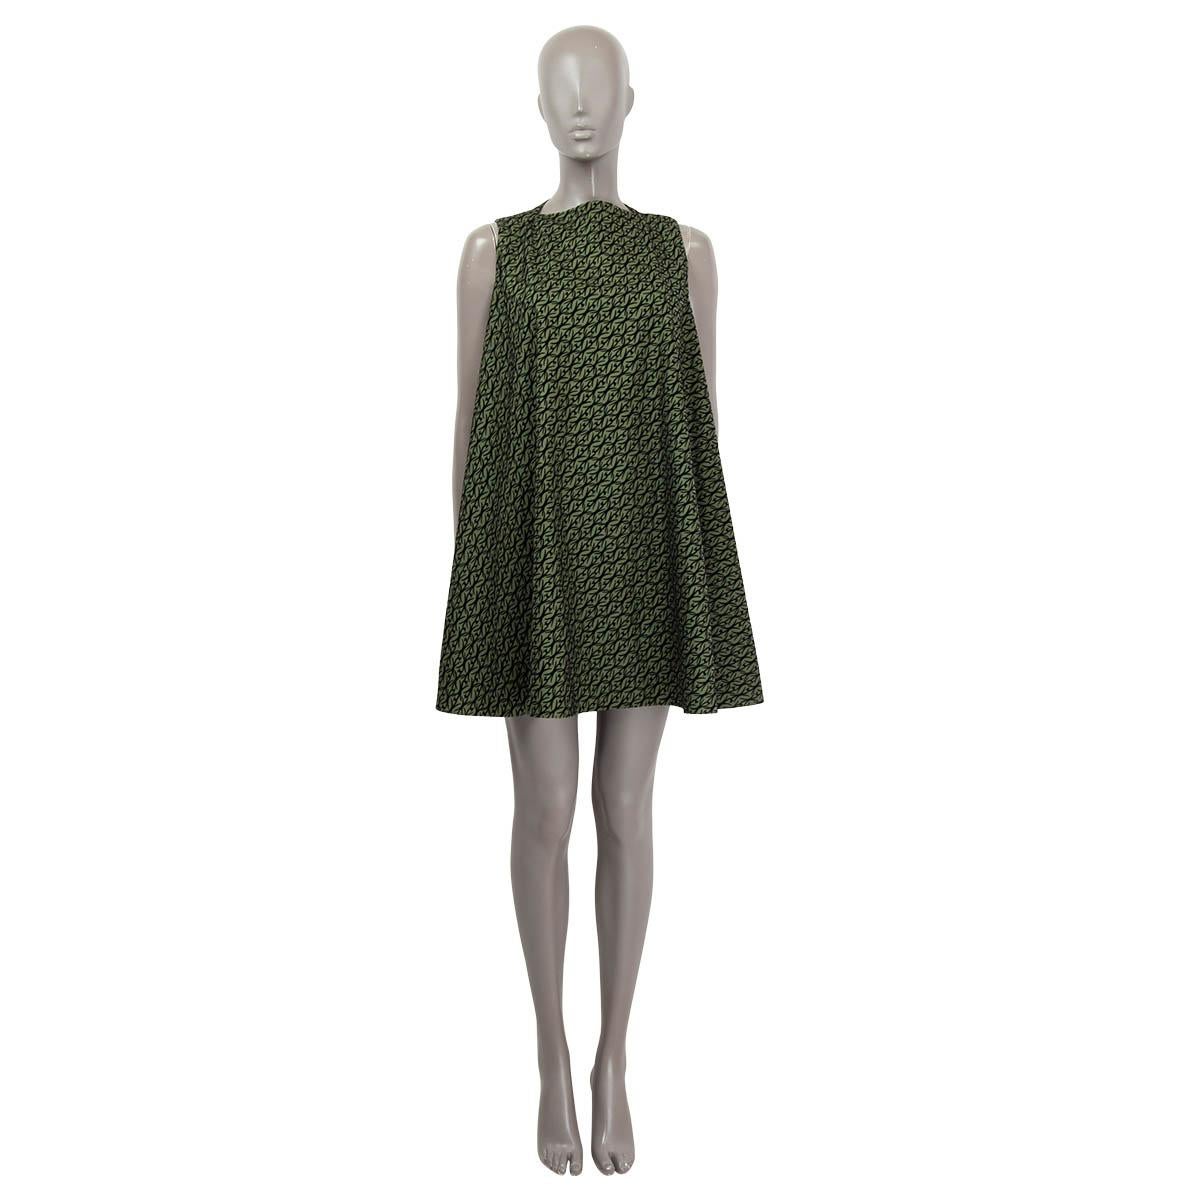 100% authentisches Alaïa Kleid in weiter A-Linie aus waldgrüner Wolle (90%) und Polyamid (10%) mit schwarzem Samtmuster. Gefüttert mit grüner Seide (95%) und Lycra (5%). Wird mit versteckten Knöpfen an der Schulter geöffnet. Wurde getragen und ist